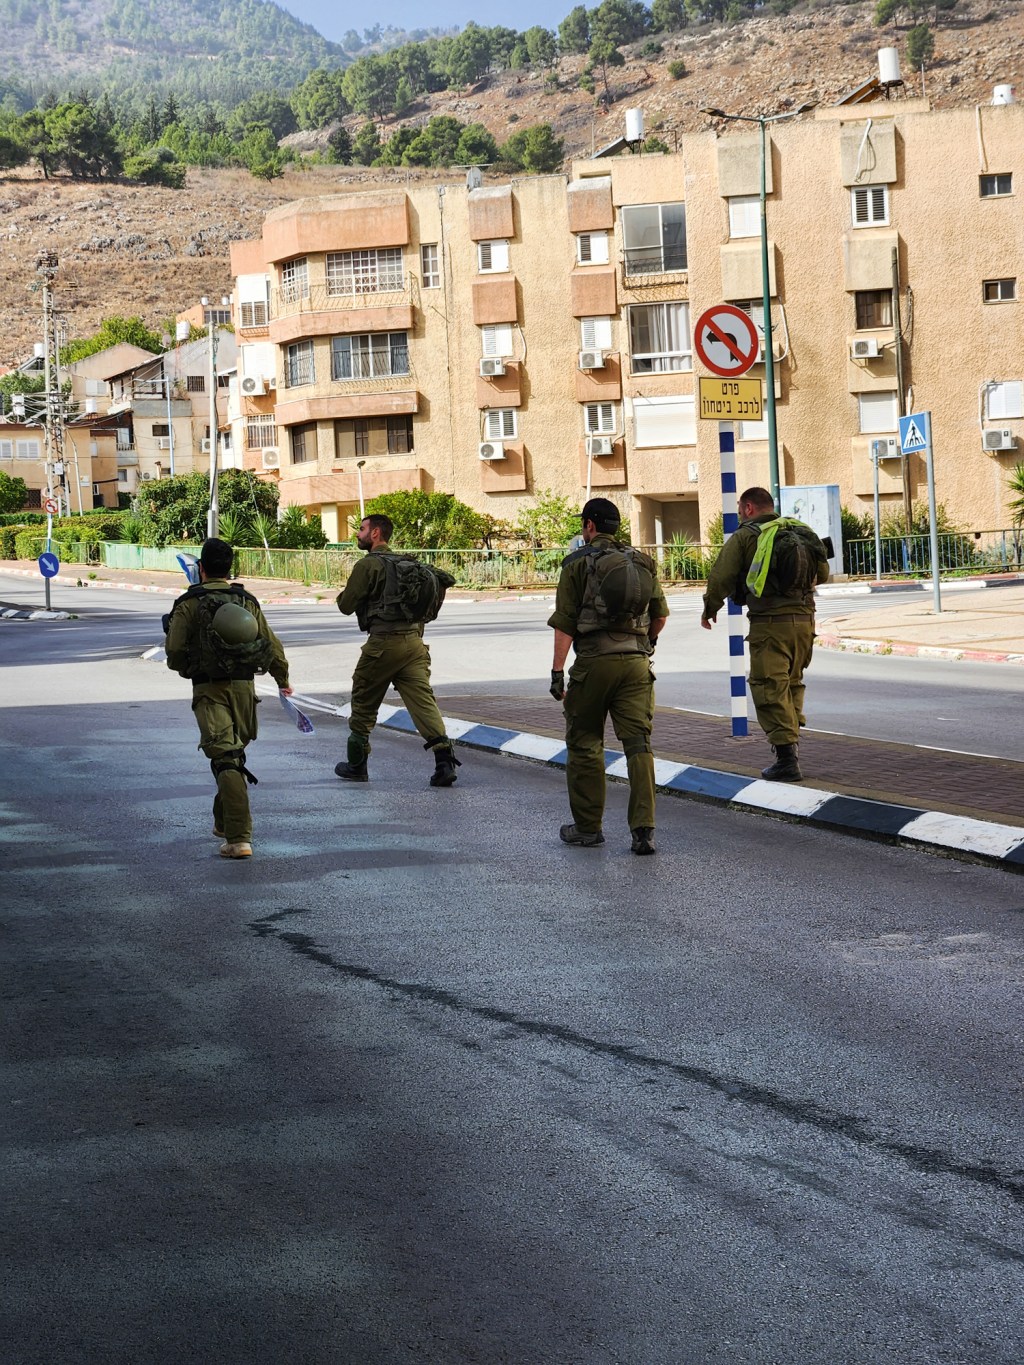 CIDADE FANTASMA - Tropas patrulham ruas desertas perto do Líbano: evacuação para hotéis seguros